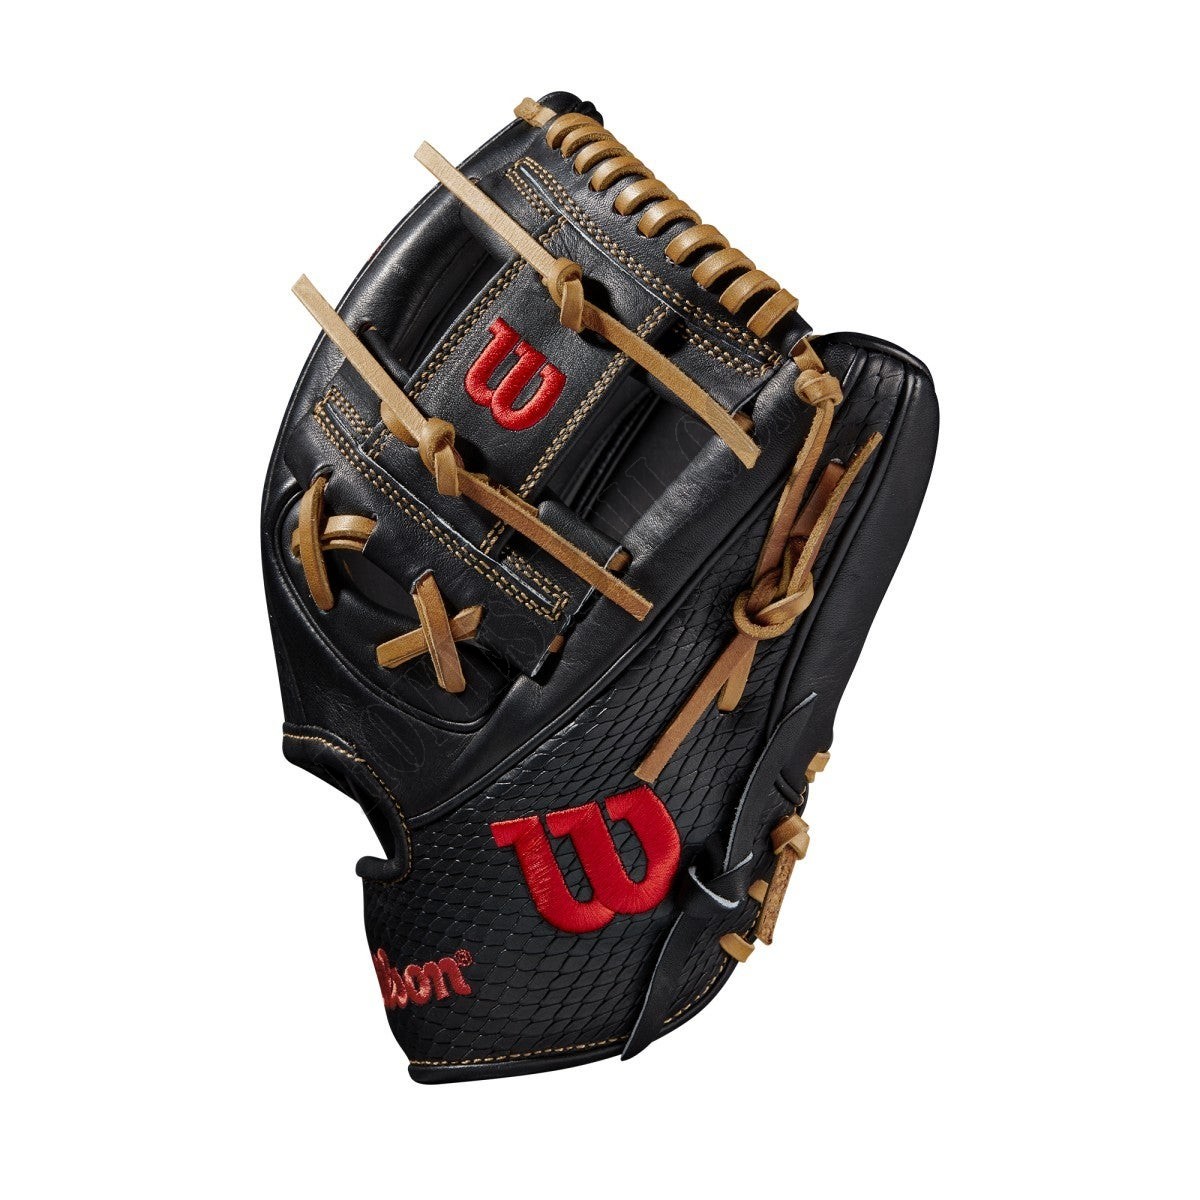 2021 A2K 1786SS 11.5" Infield Baseball Glove ● Wilson Promotions - -3